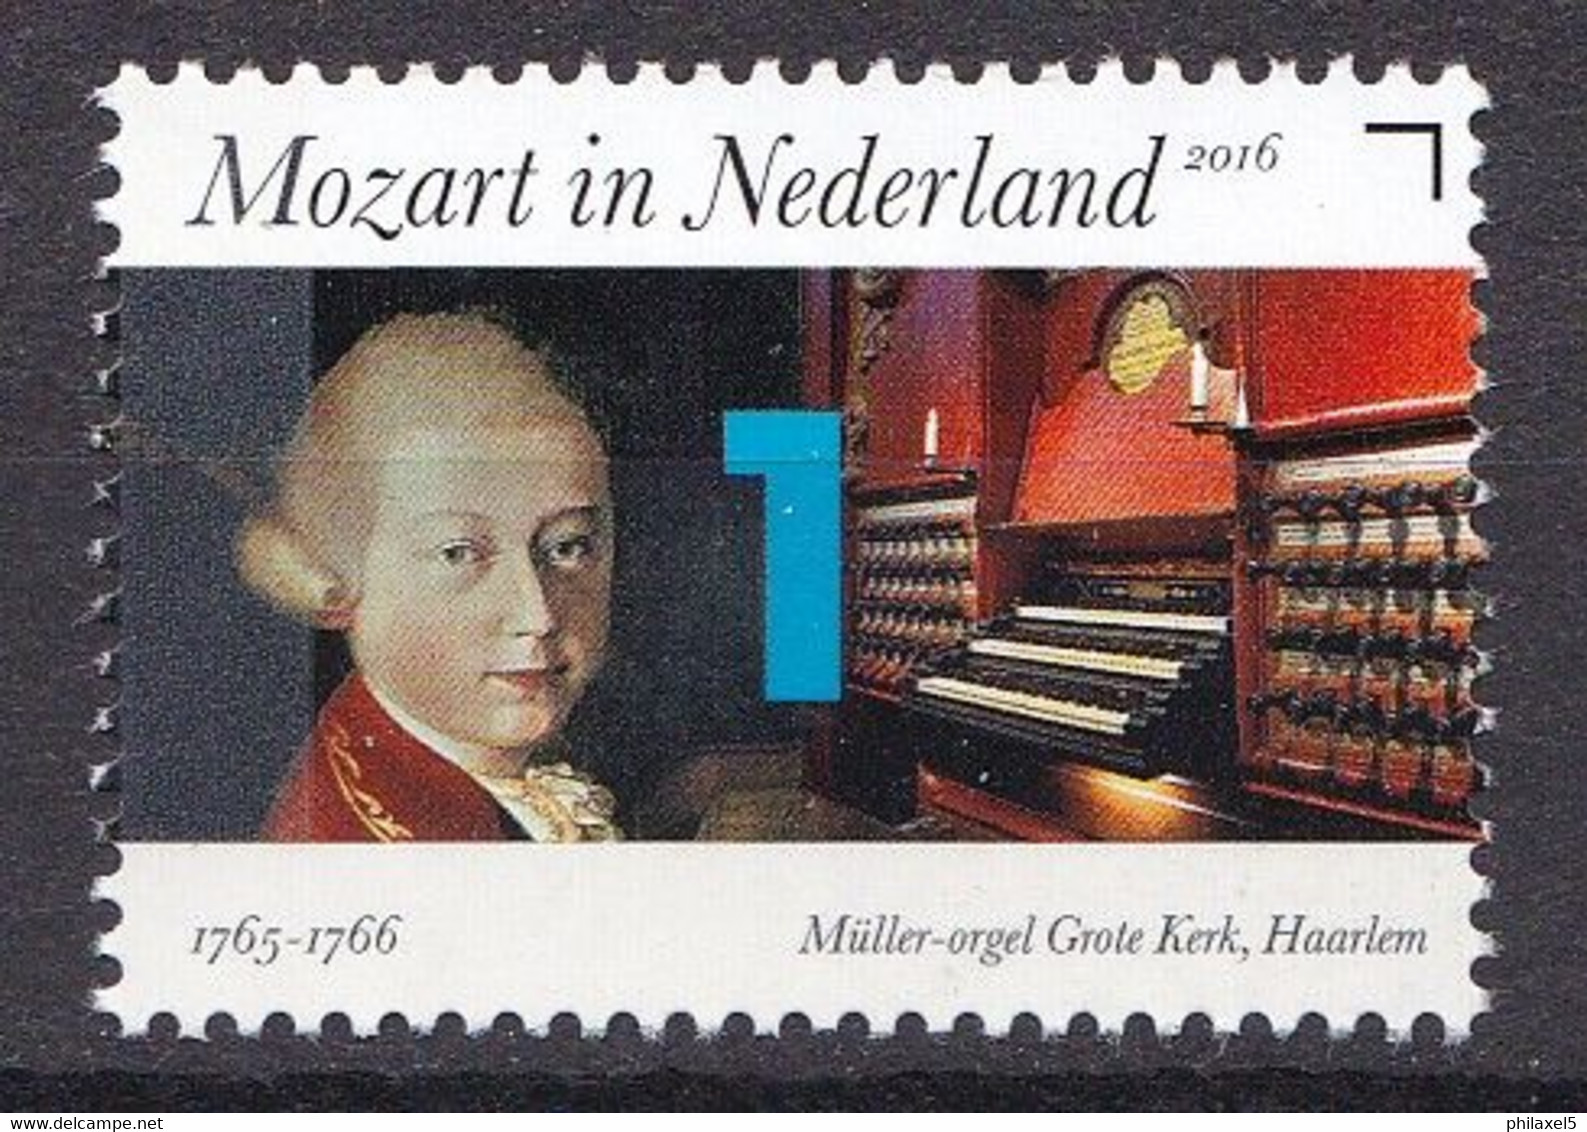 Nederland - Mozart In Nederland 1765-1766 - Müller-orgel Grote Kerk, Haarlem - MNH - NVPH 3414 - Musica